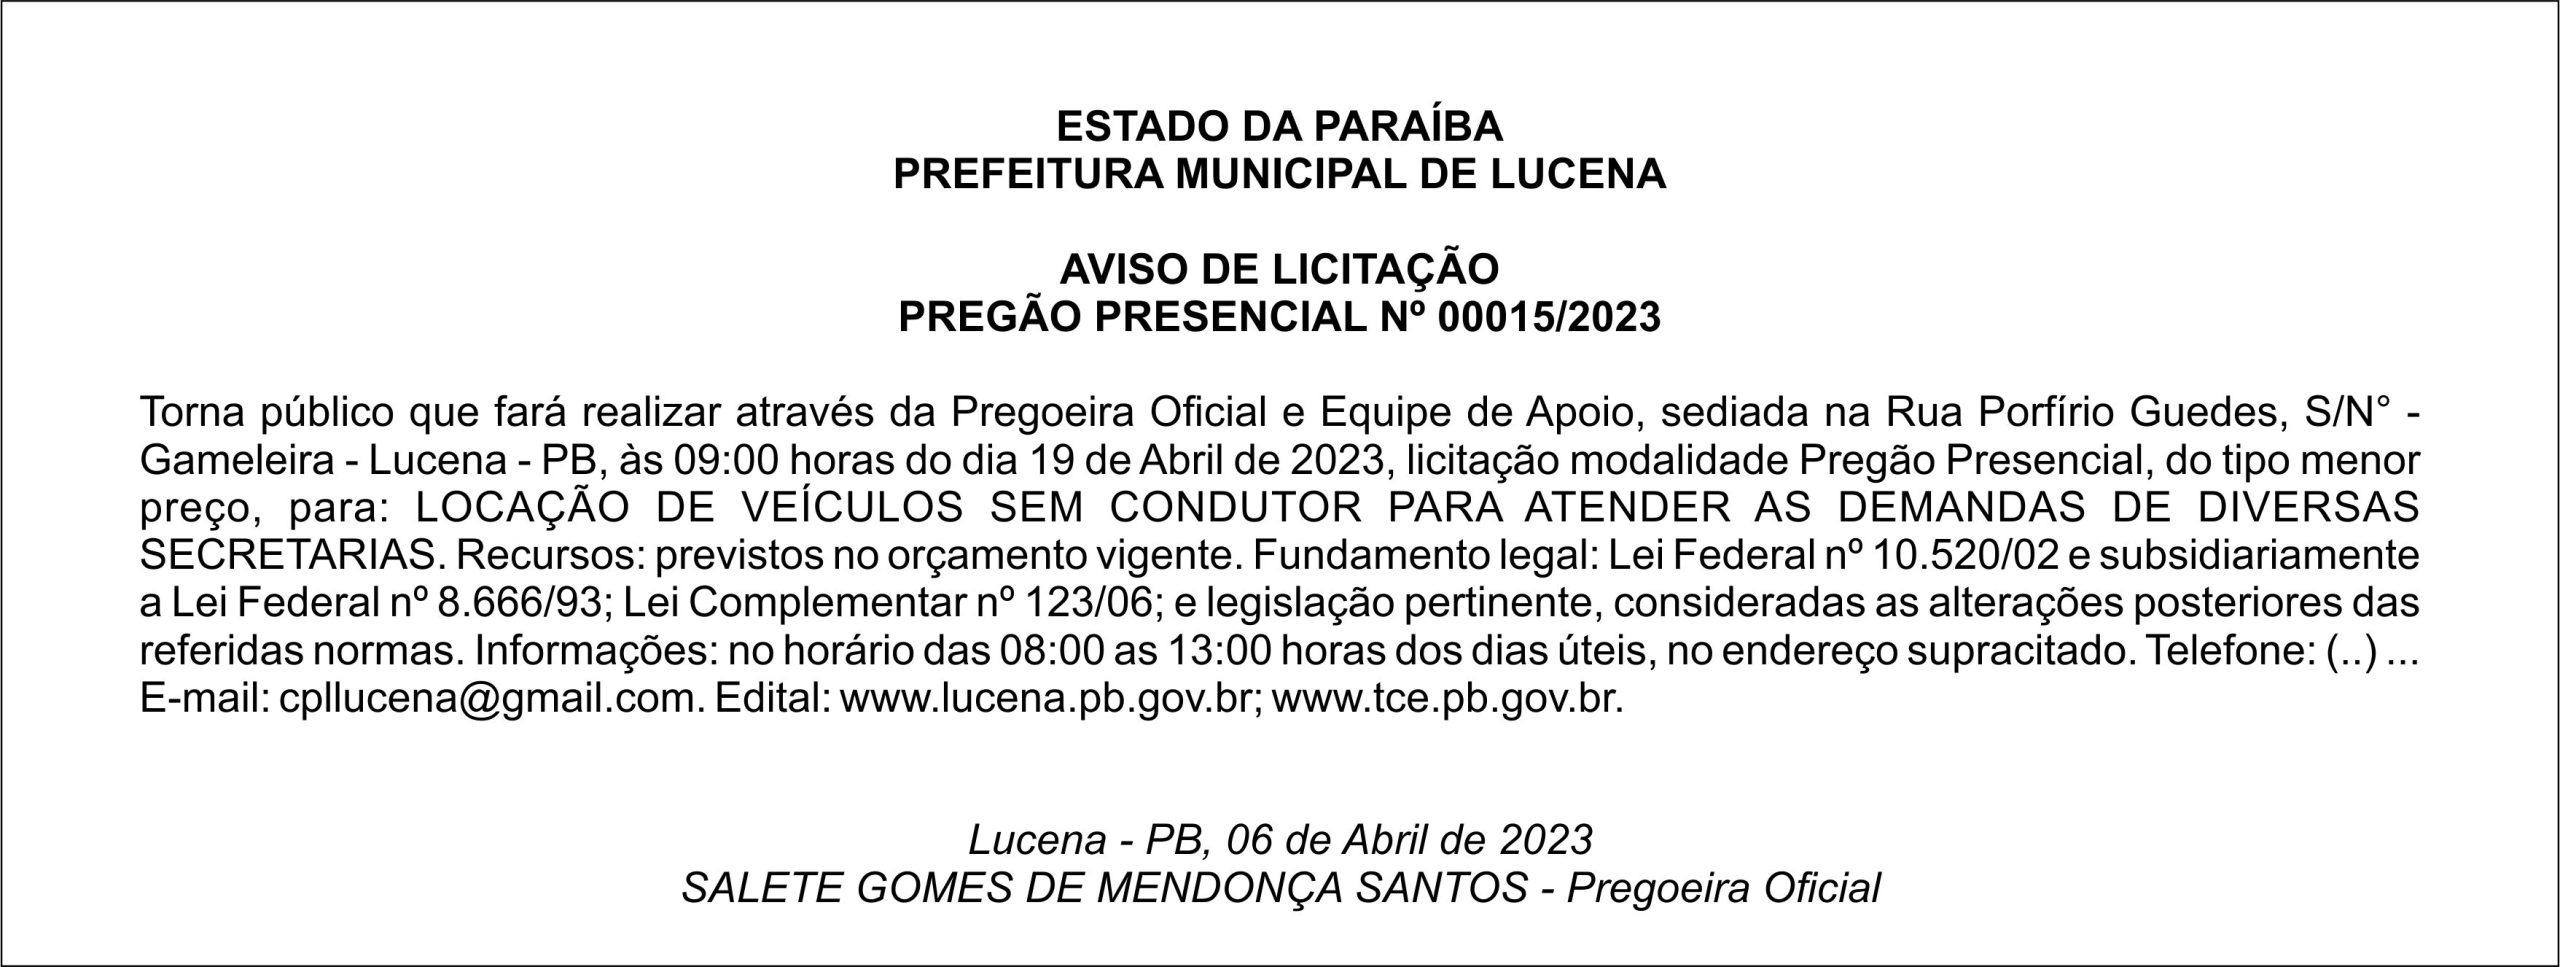 PREFEITURA MUNICIPAL DE LUCENA – AVISO DE LICITAÇÃO – PREGÃO PRESENCIAL Nº 00015/2023